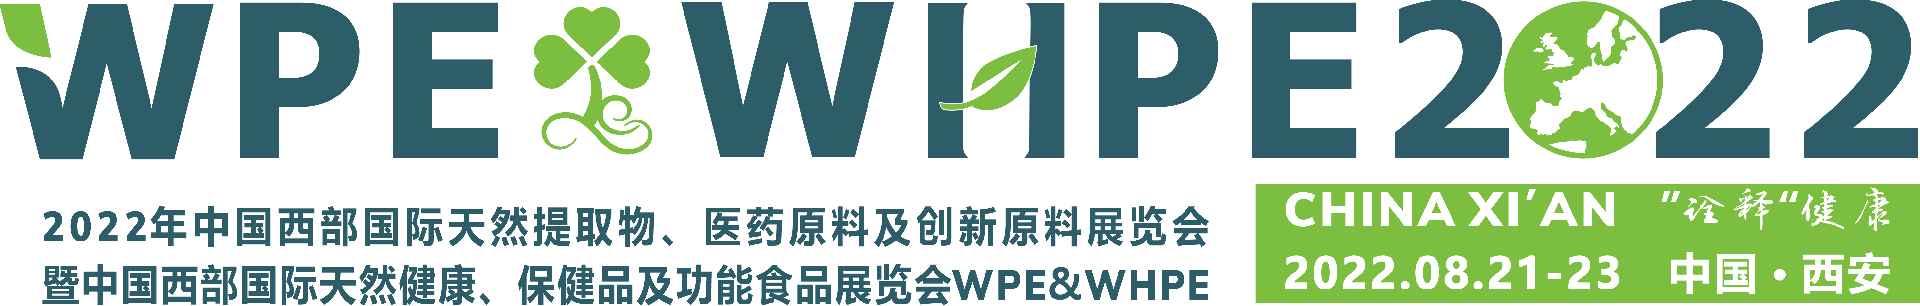 西部植提logo最新.png